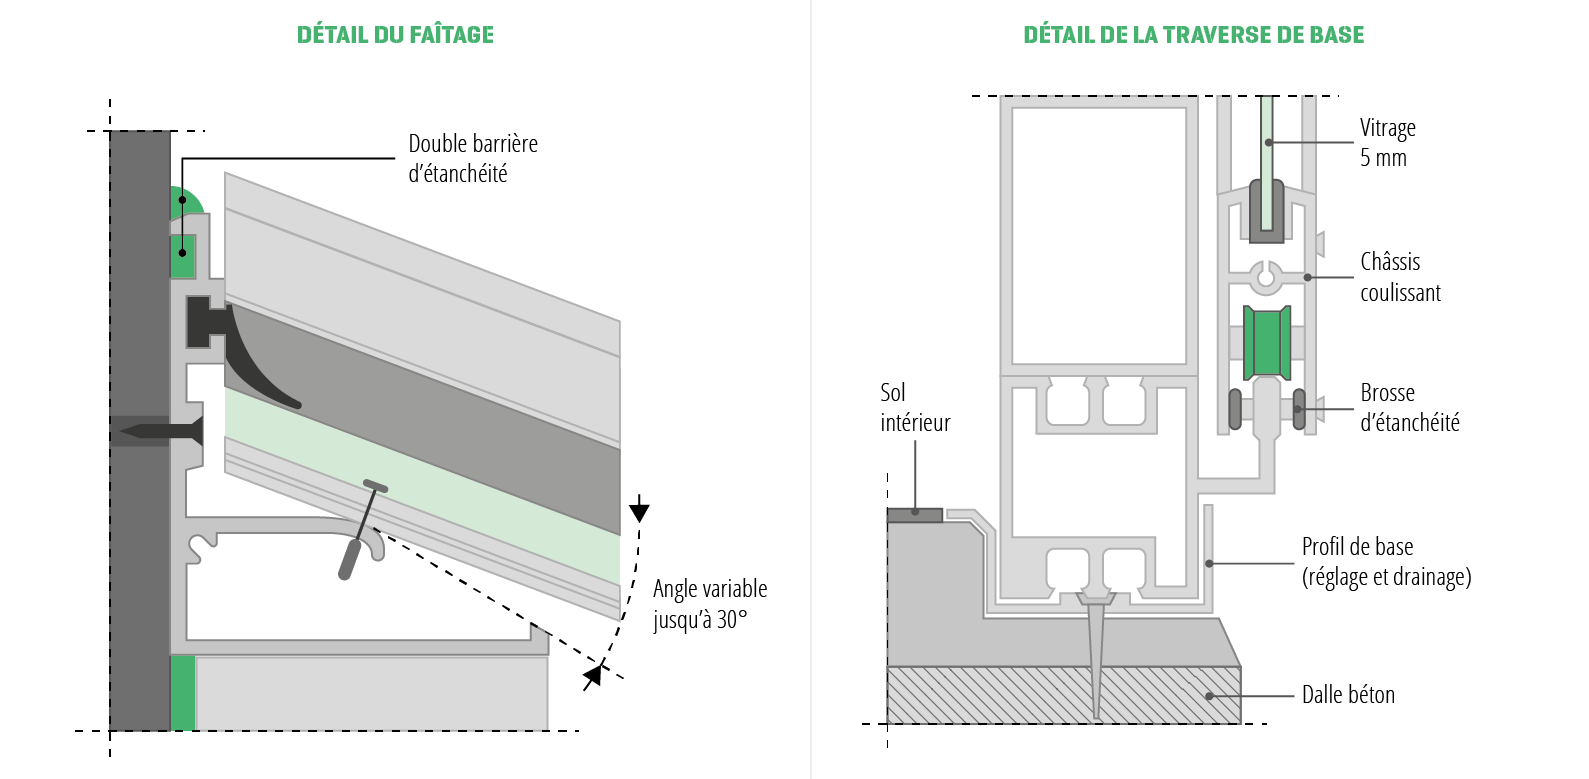 Vérandas : schémas du détail du faîtage (à gauche) et de la traverse de base (à droite)